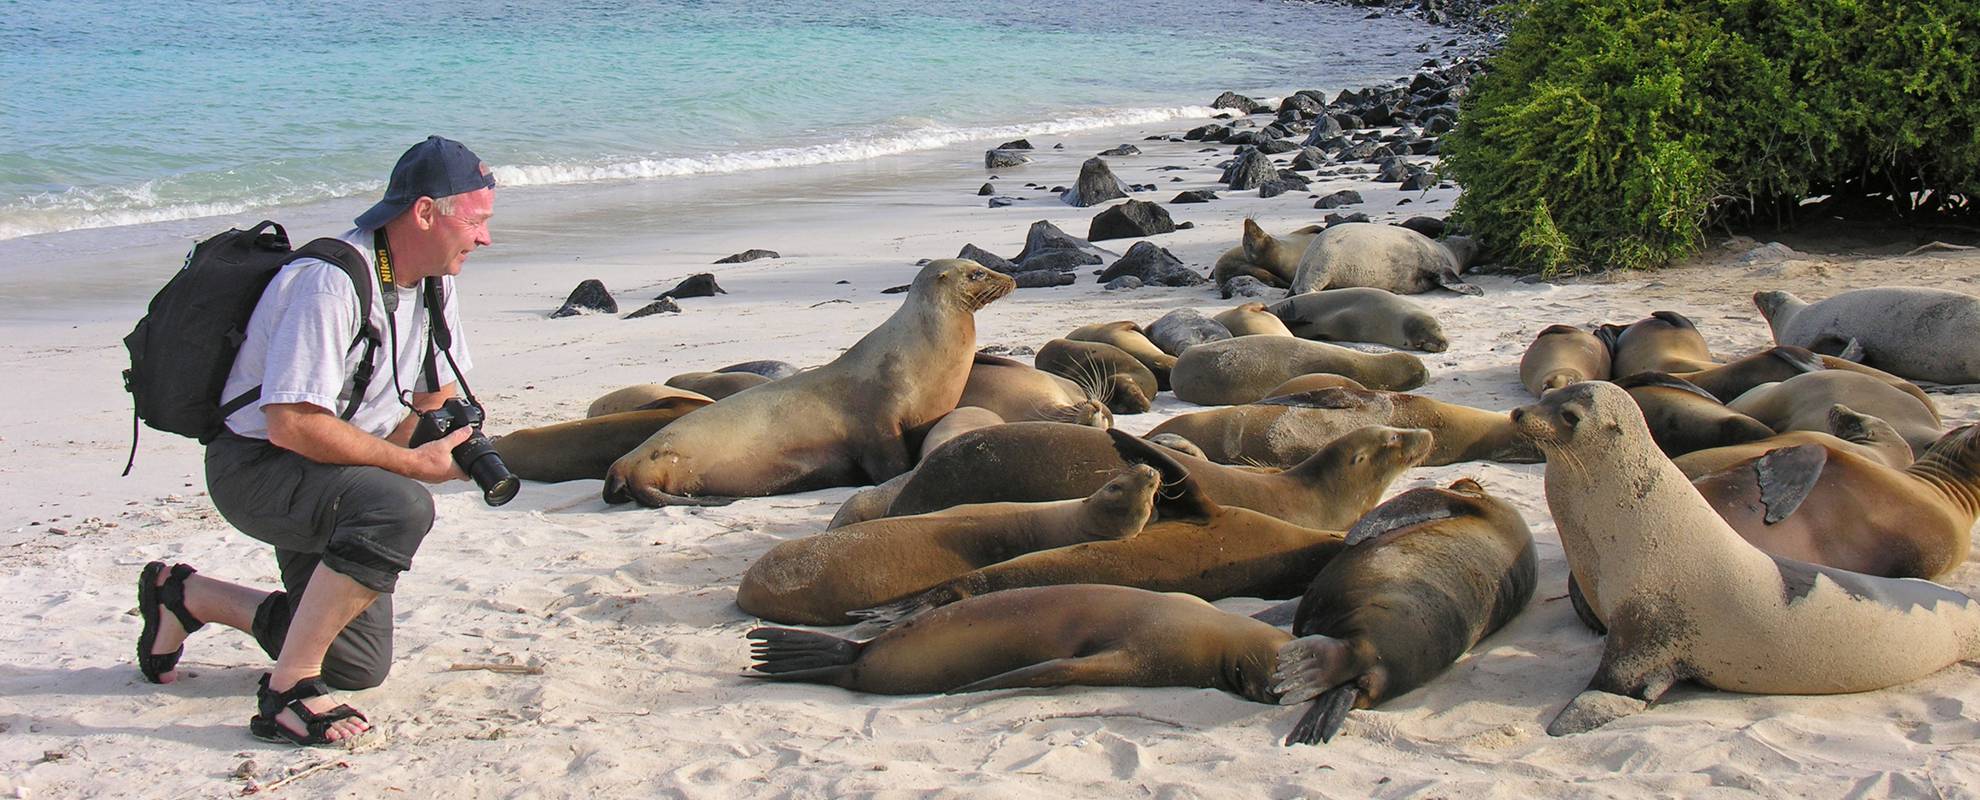 Djuren på Galapagos är inte rädda för människor